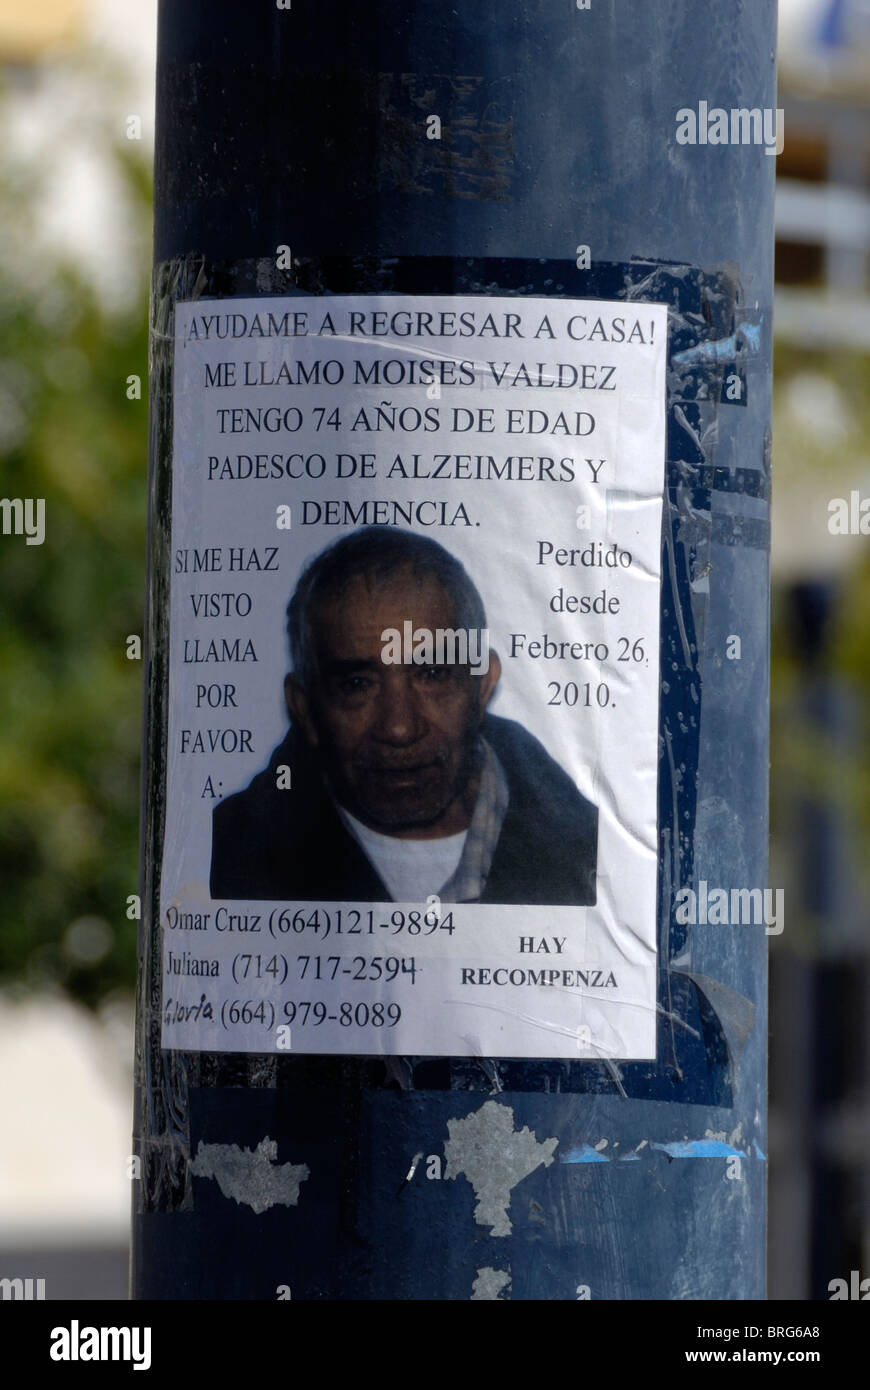 Une personne disparue langue espagnol affiche apposée à un poteau des feux de circulation dans le centre-ville de San Diego, en Californie. Banque D'Images